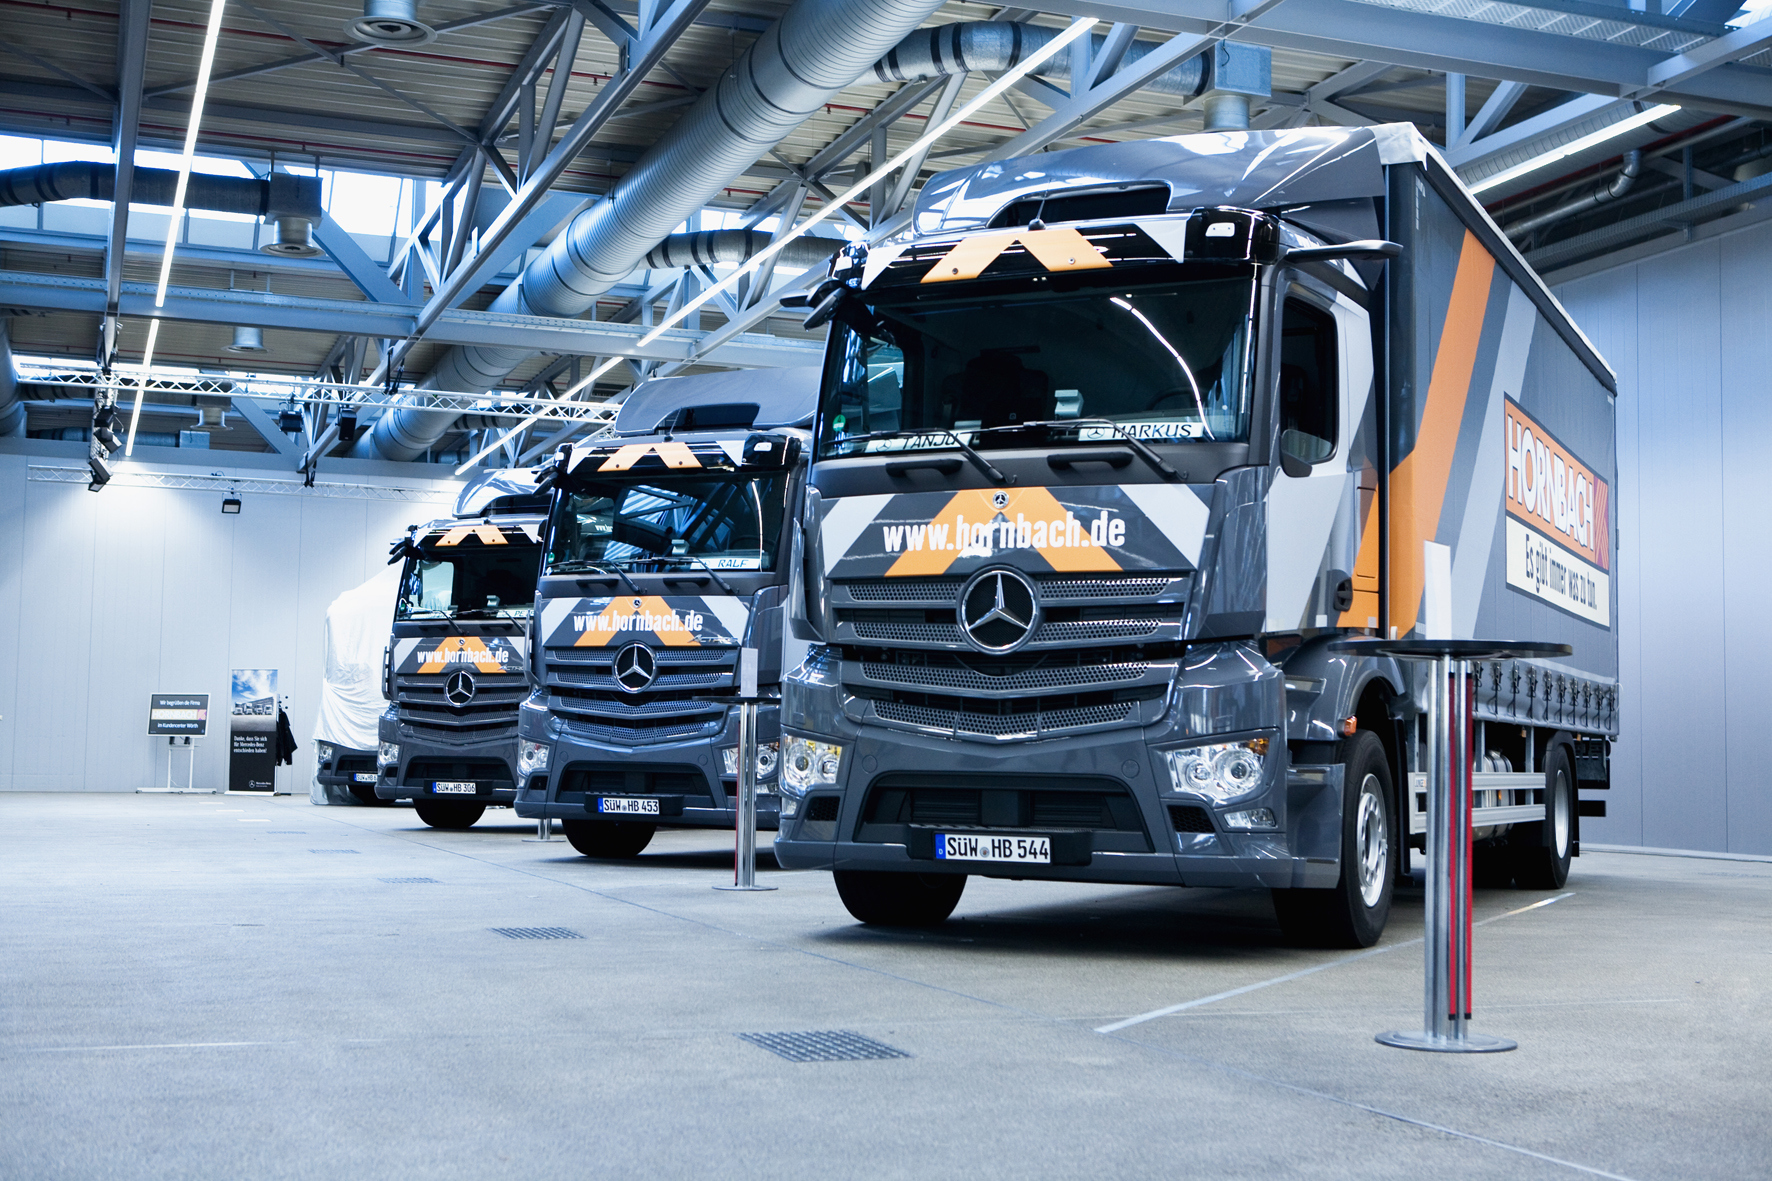 34 neue Lkw für den Logistik-Fuhrpark: Hornbach setzt auf den Mercedes-Benz Actros